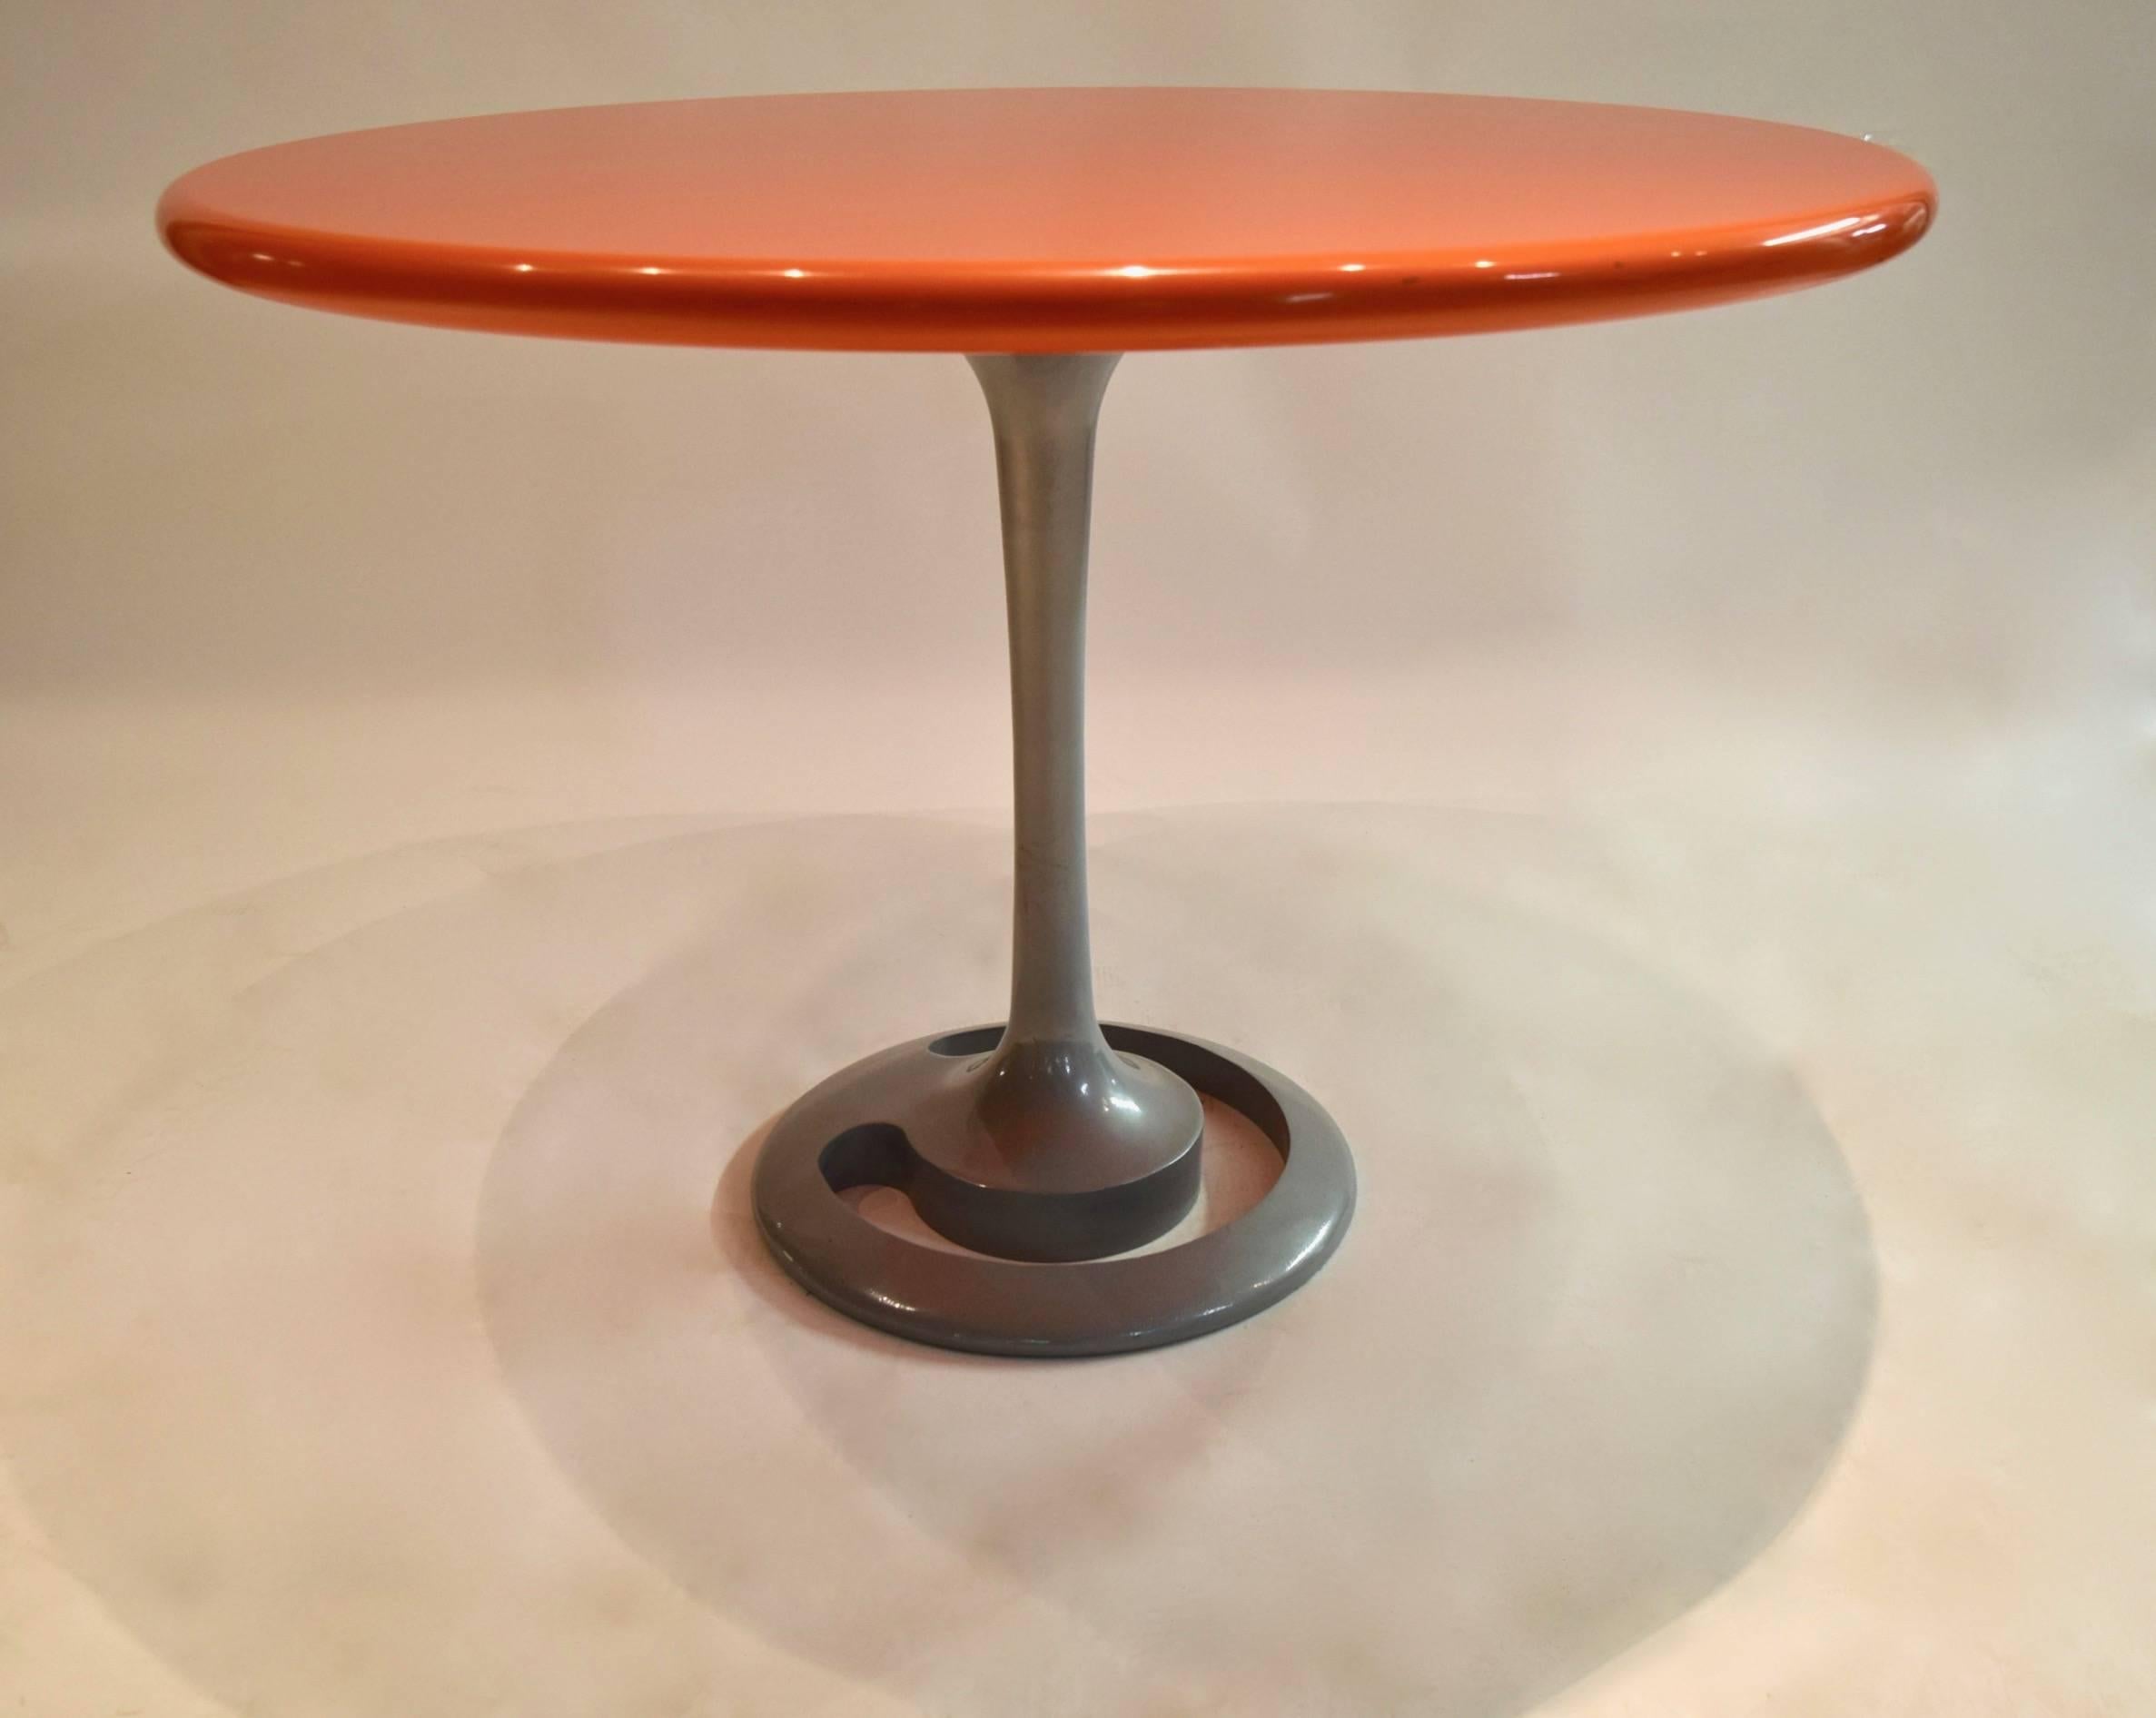 Table ronde originale de Komed, conçue par Marc Newson et réalisée pour le restaurant 